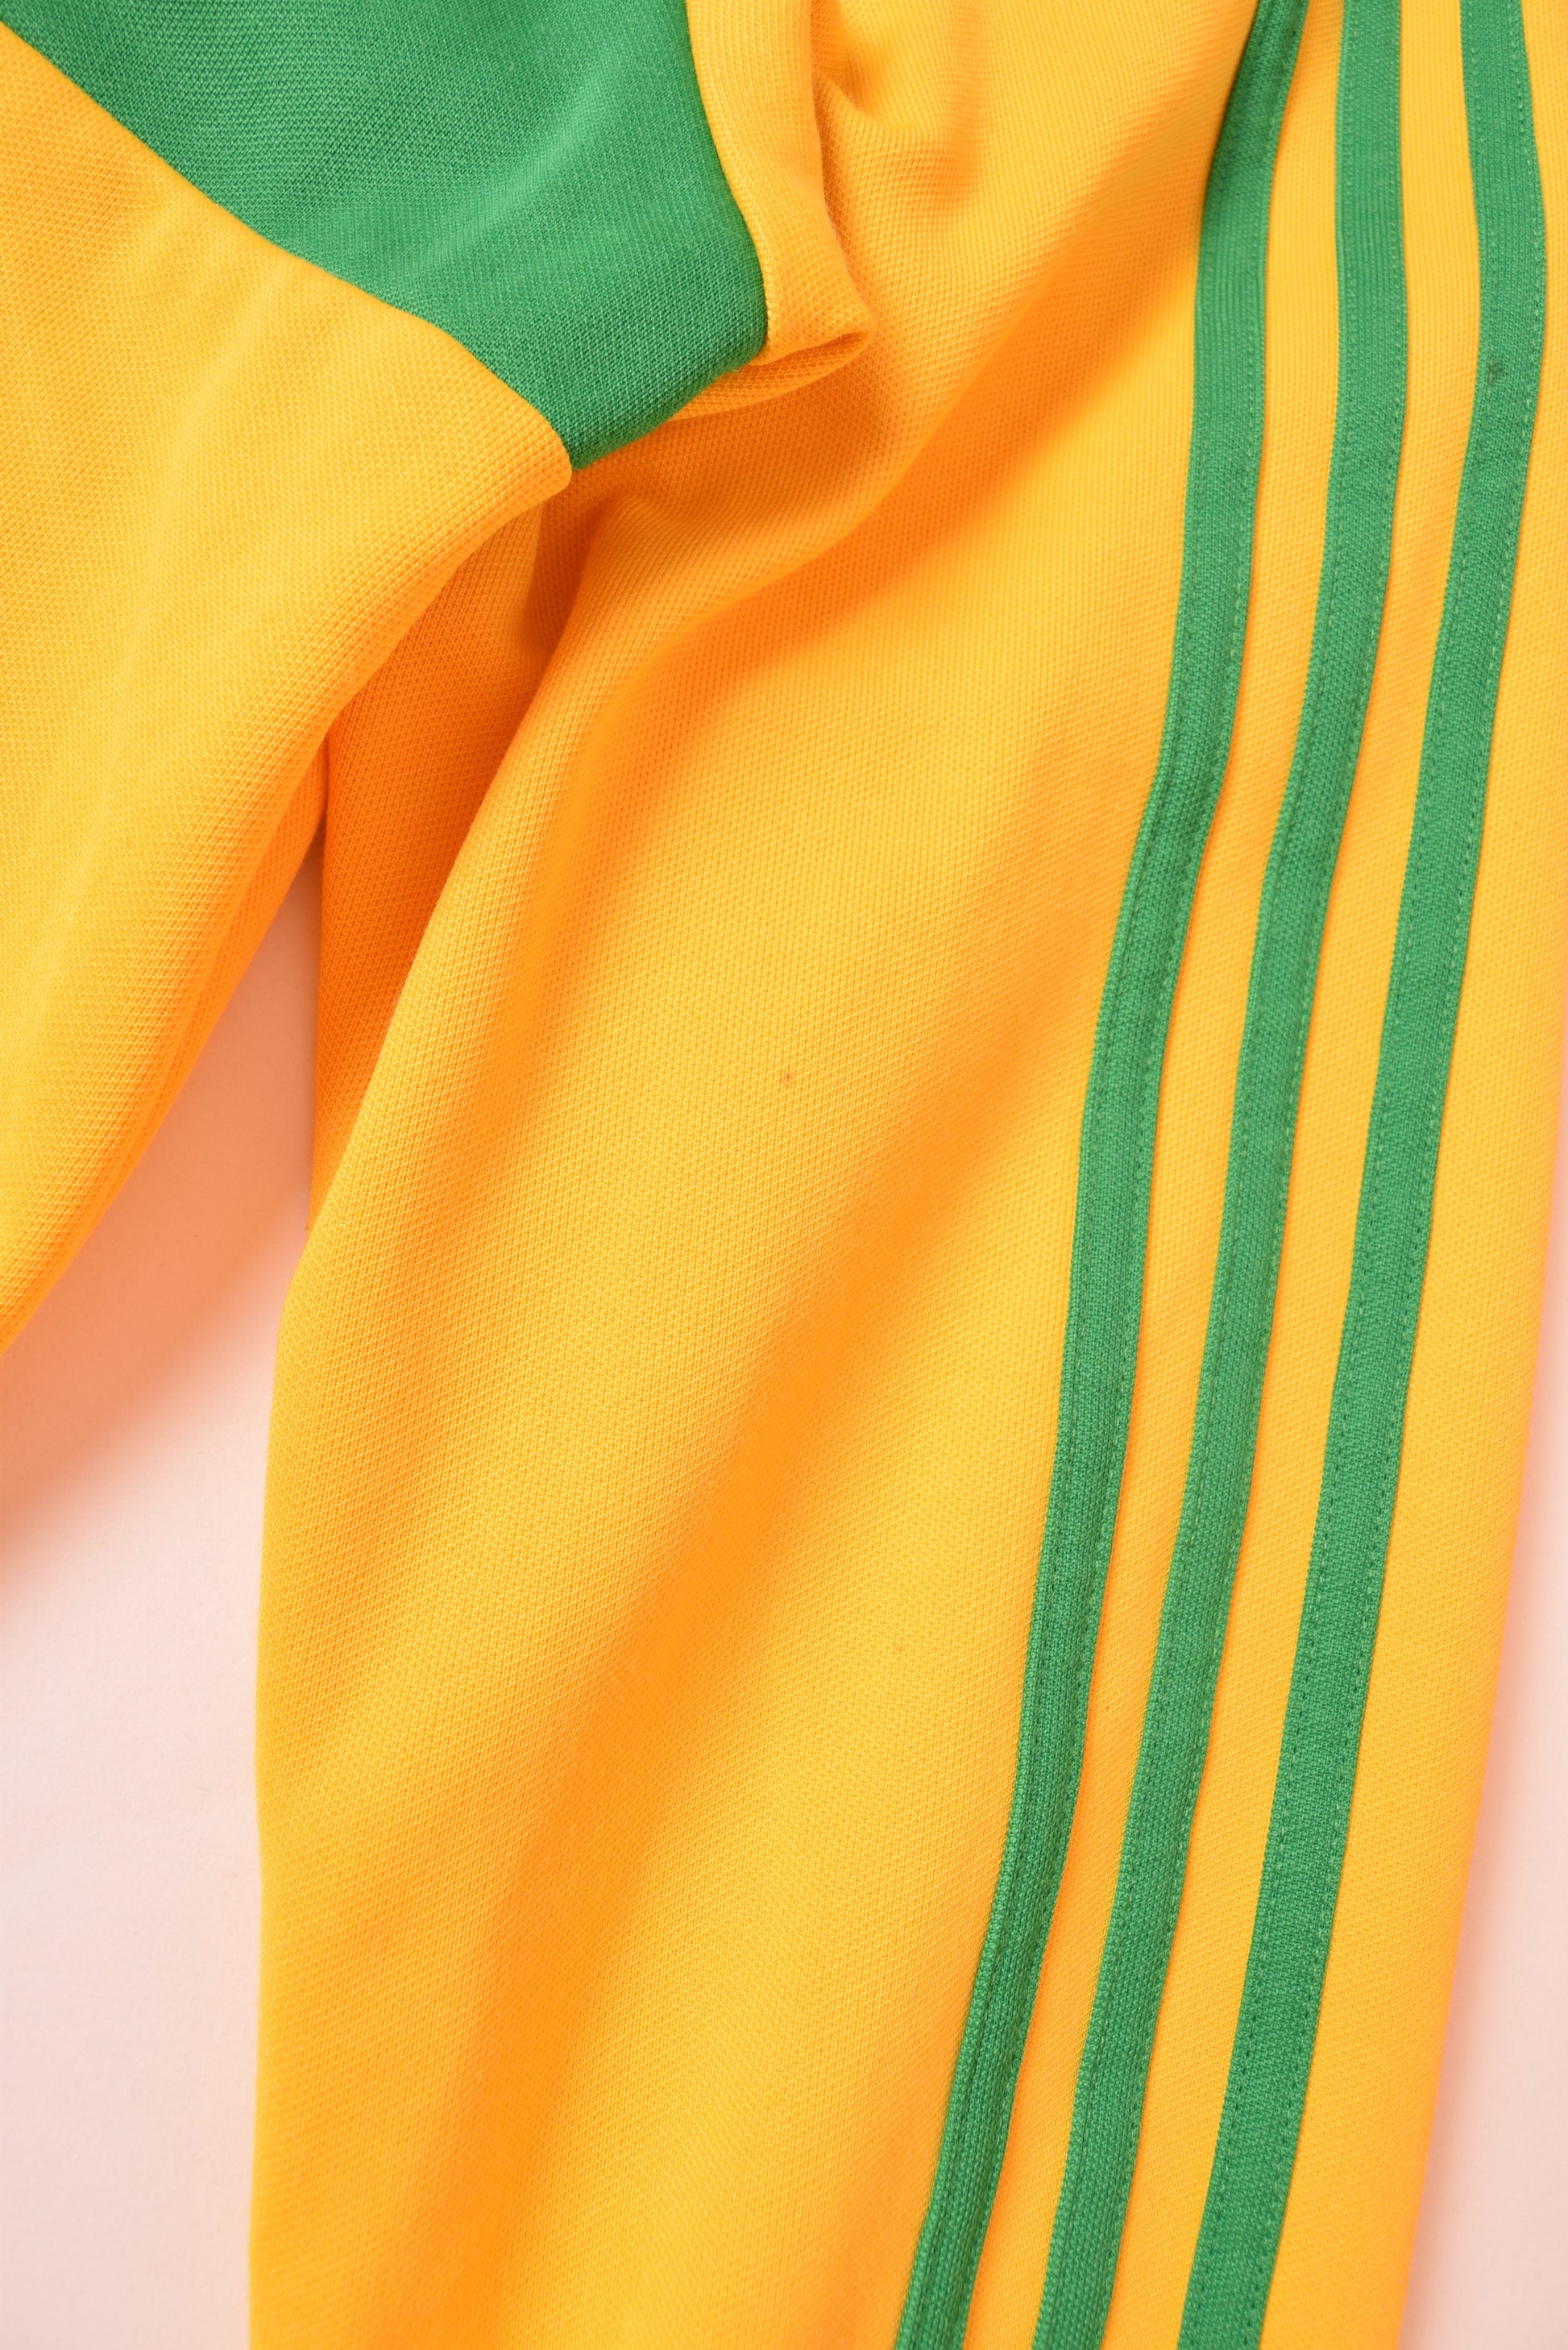 Adidas Originals I Love Rio de Janeiro Size M Yellow/Green